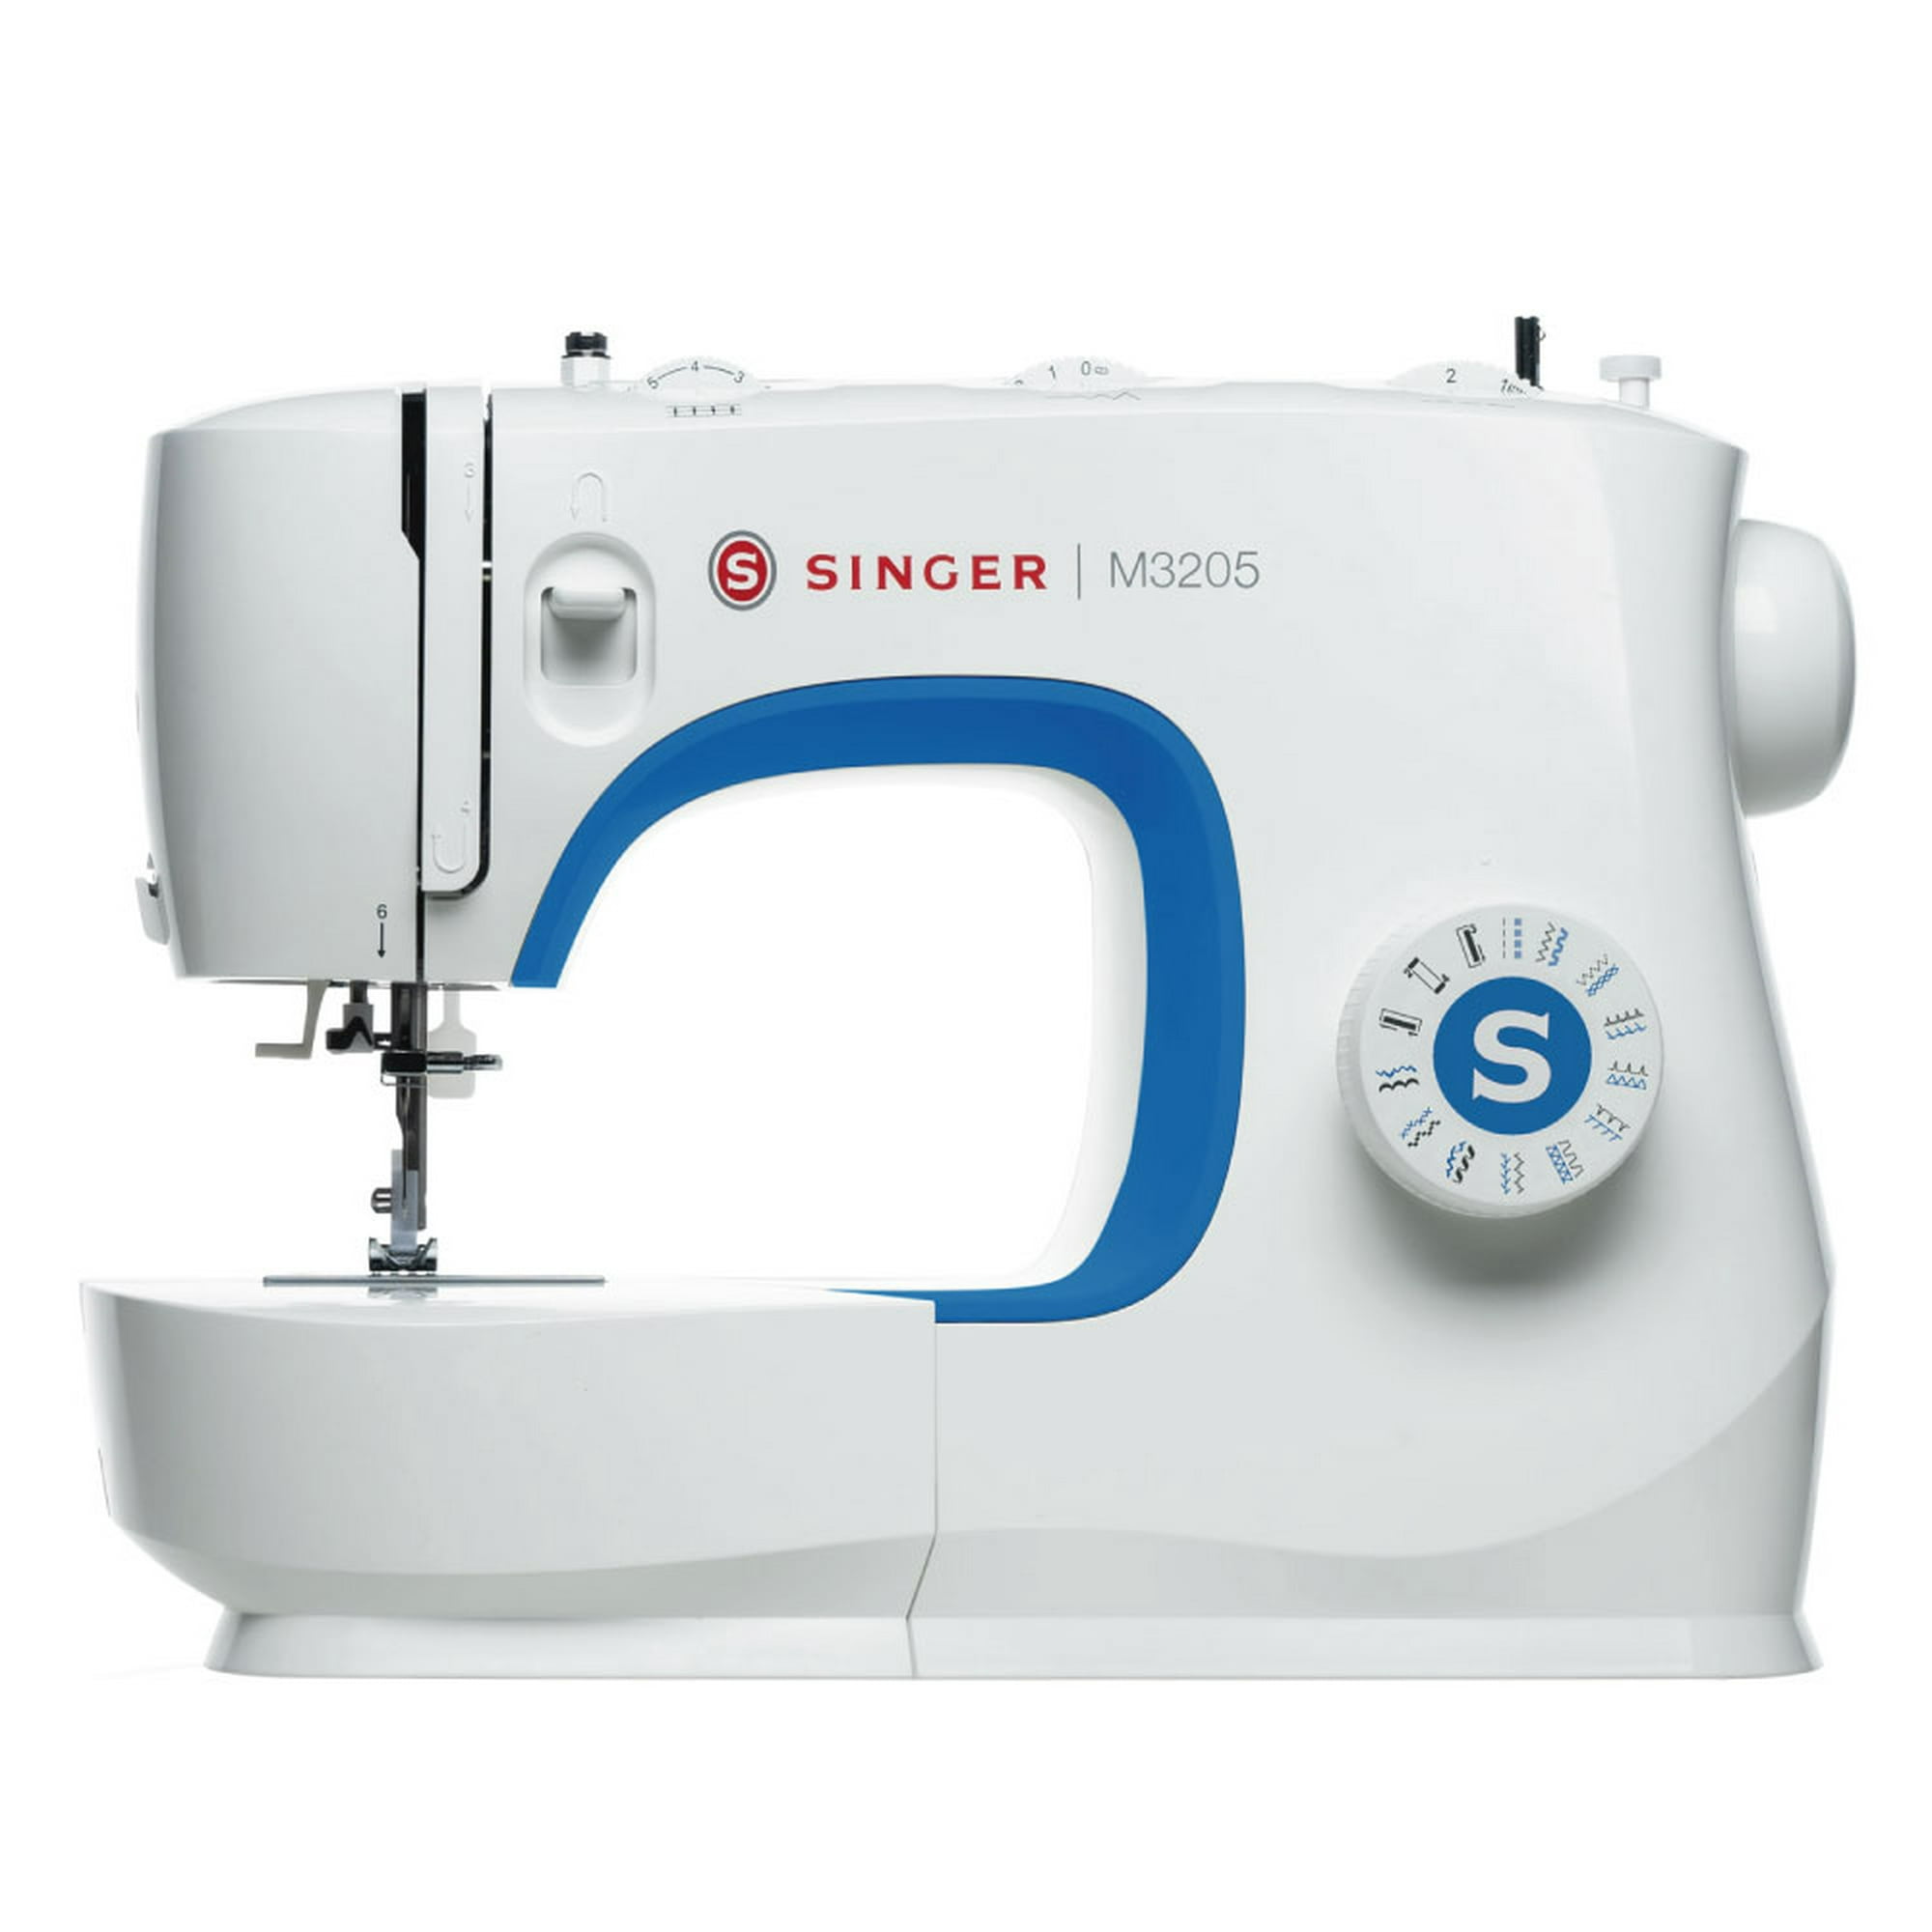 NEX Máquina de coser para niños con 12 costuras integradas